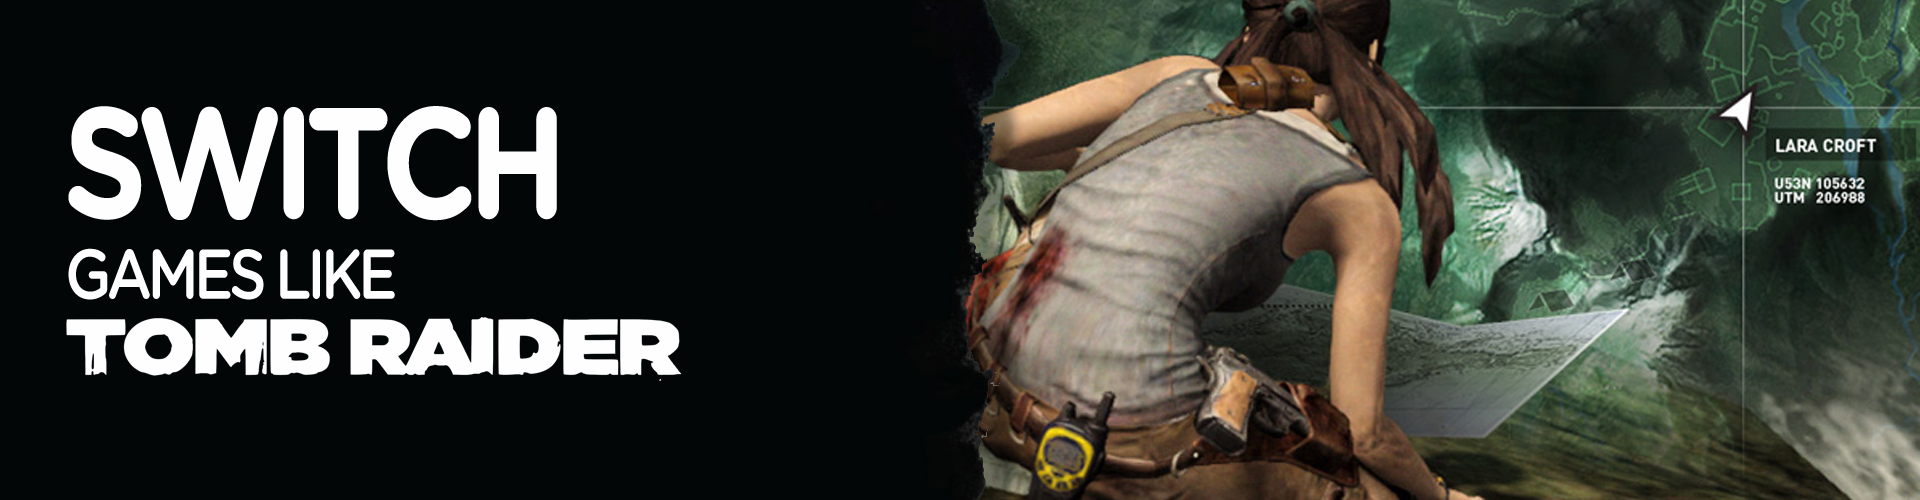 Los Mejores Juegos Como Tomb Raider para la Switch